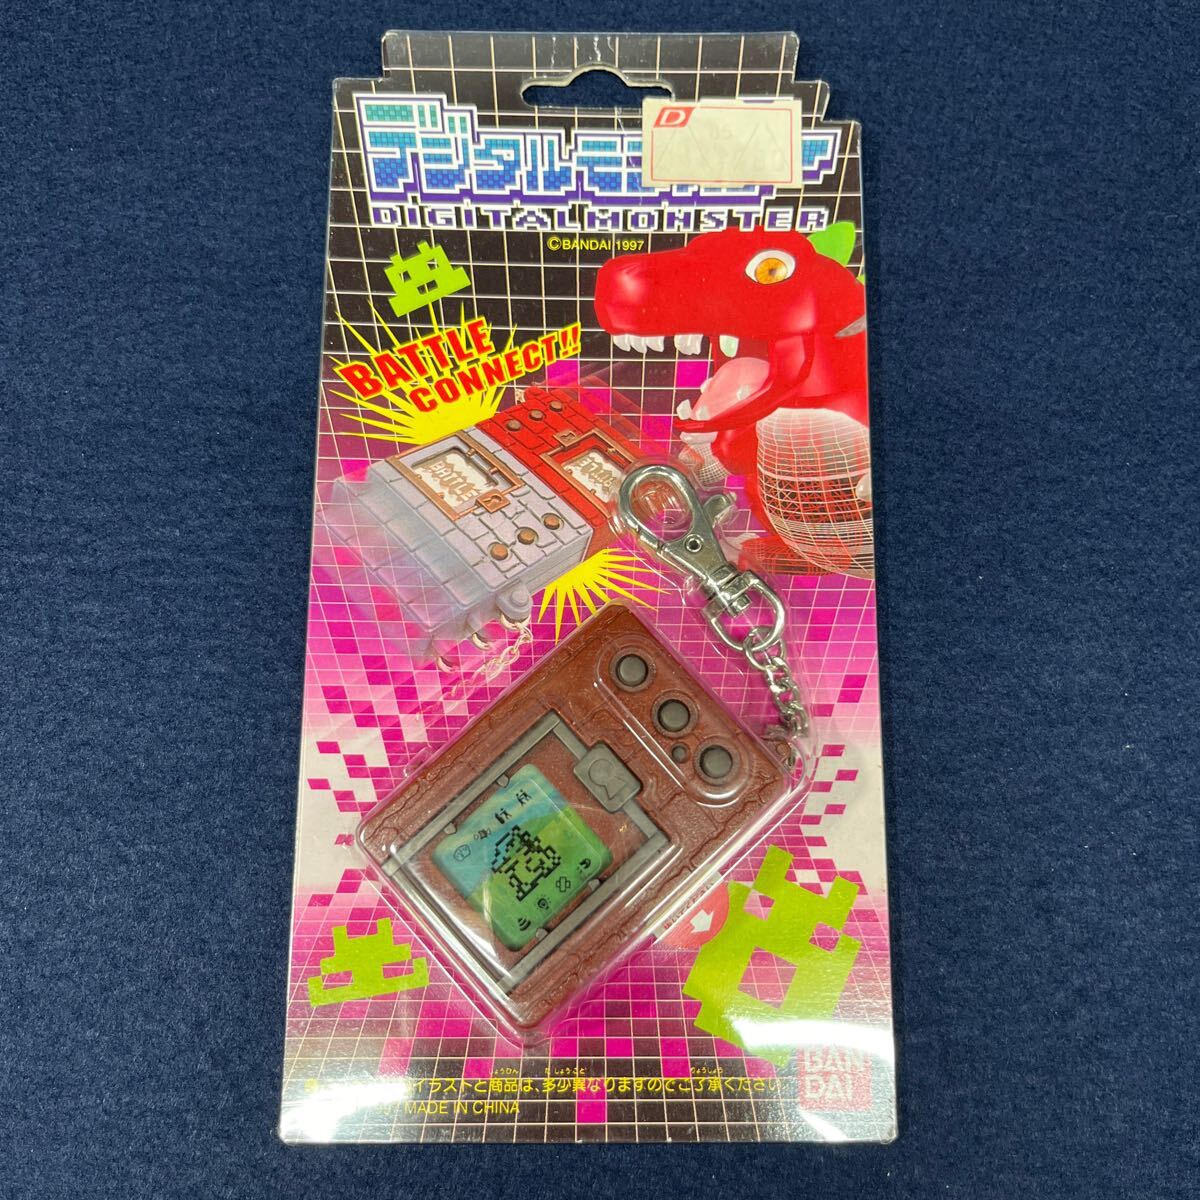  не использовался товар BANDAI Bandai Digital Monster 1997 год производства первое поколение digimon подлинная вещь игрушка игра 2 шт. комплект 